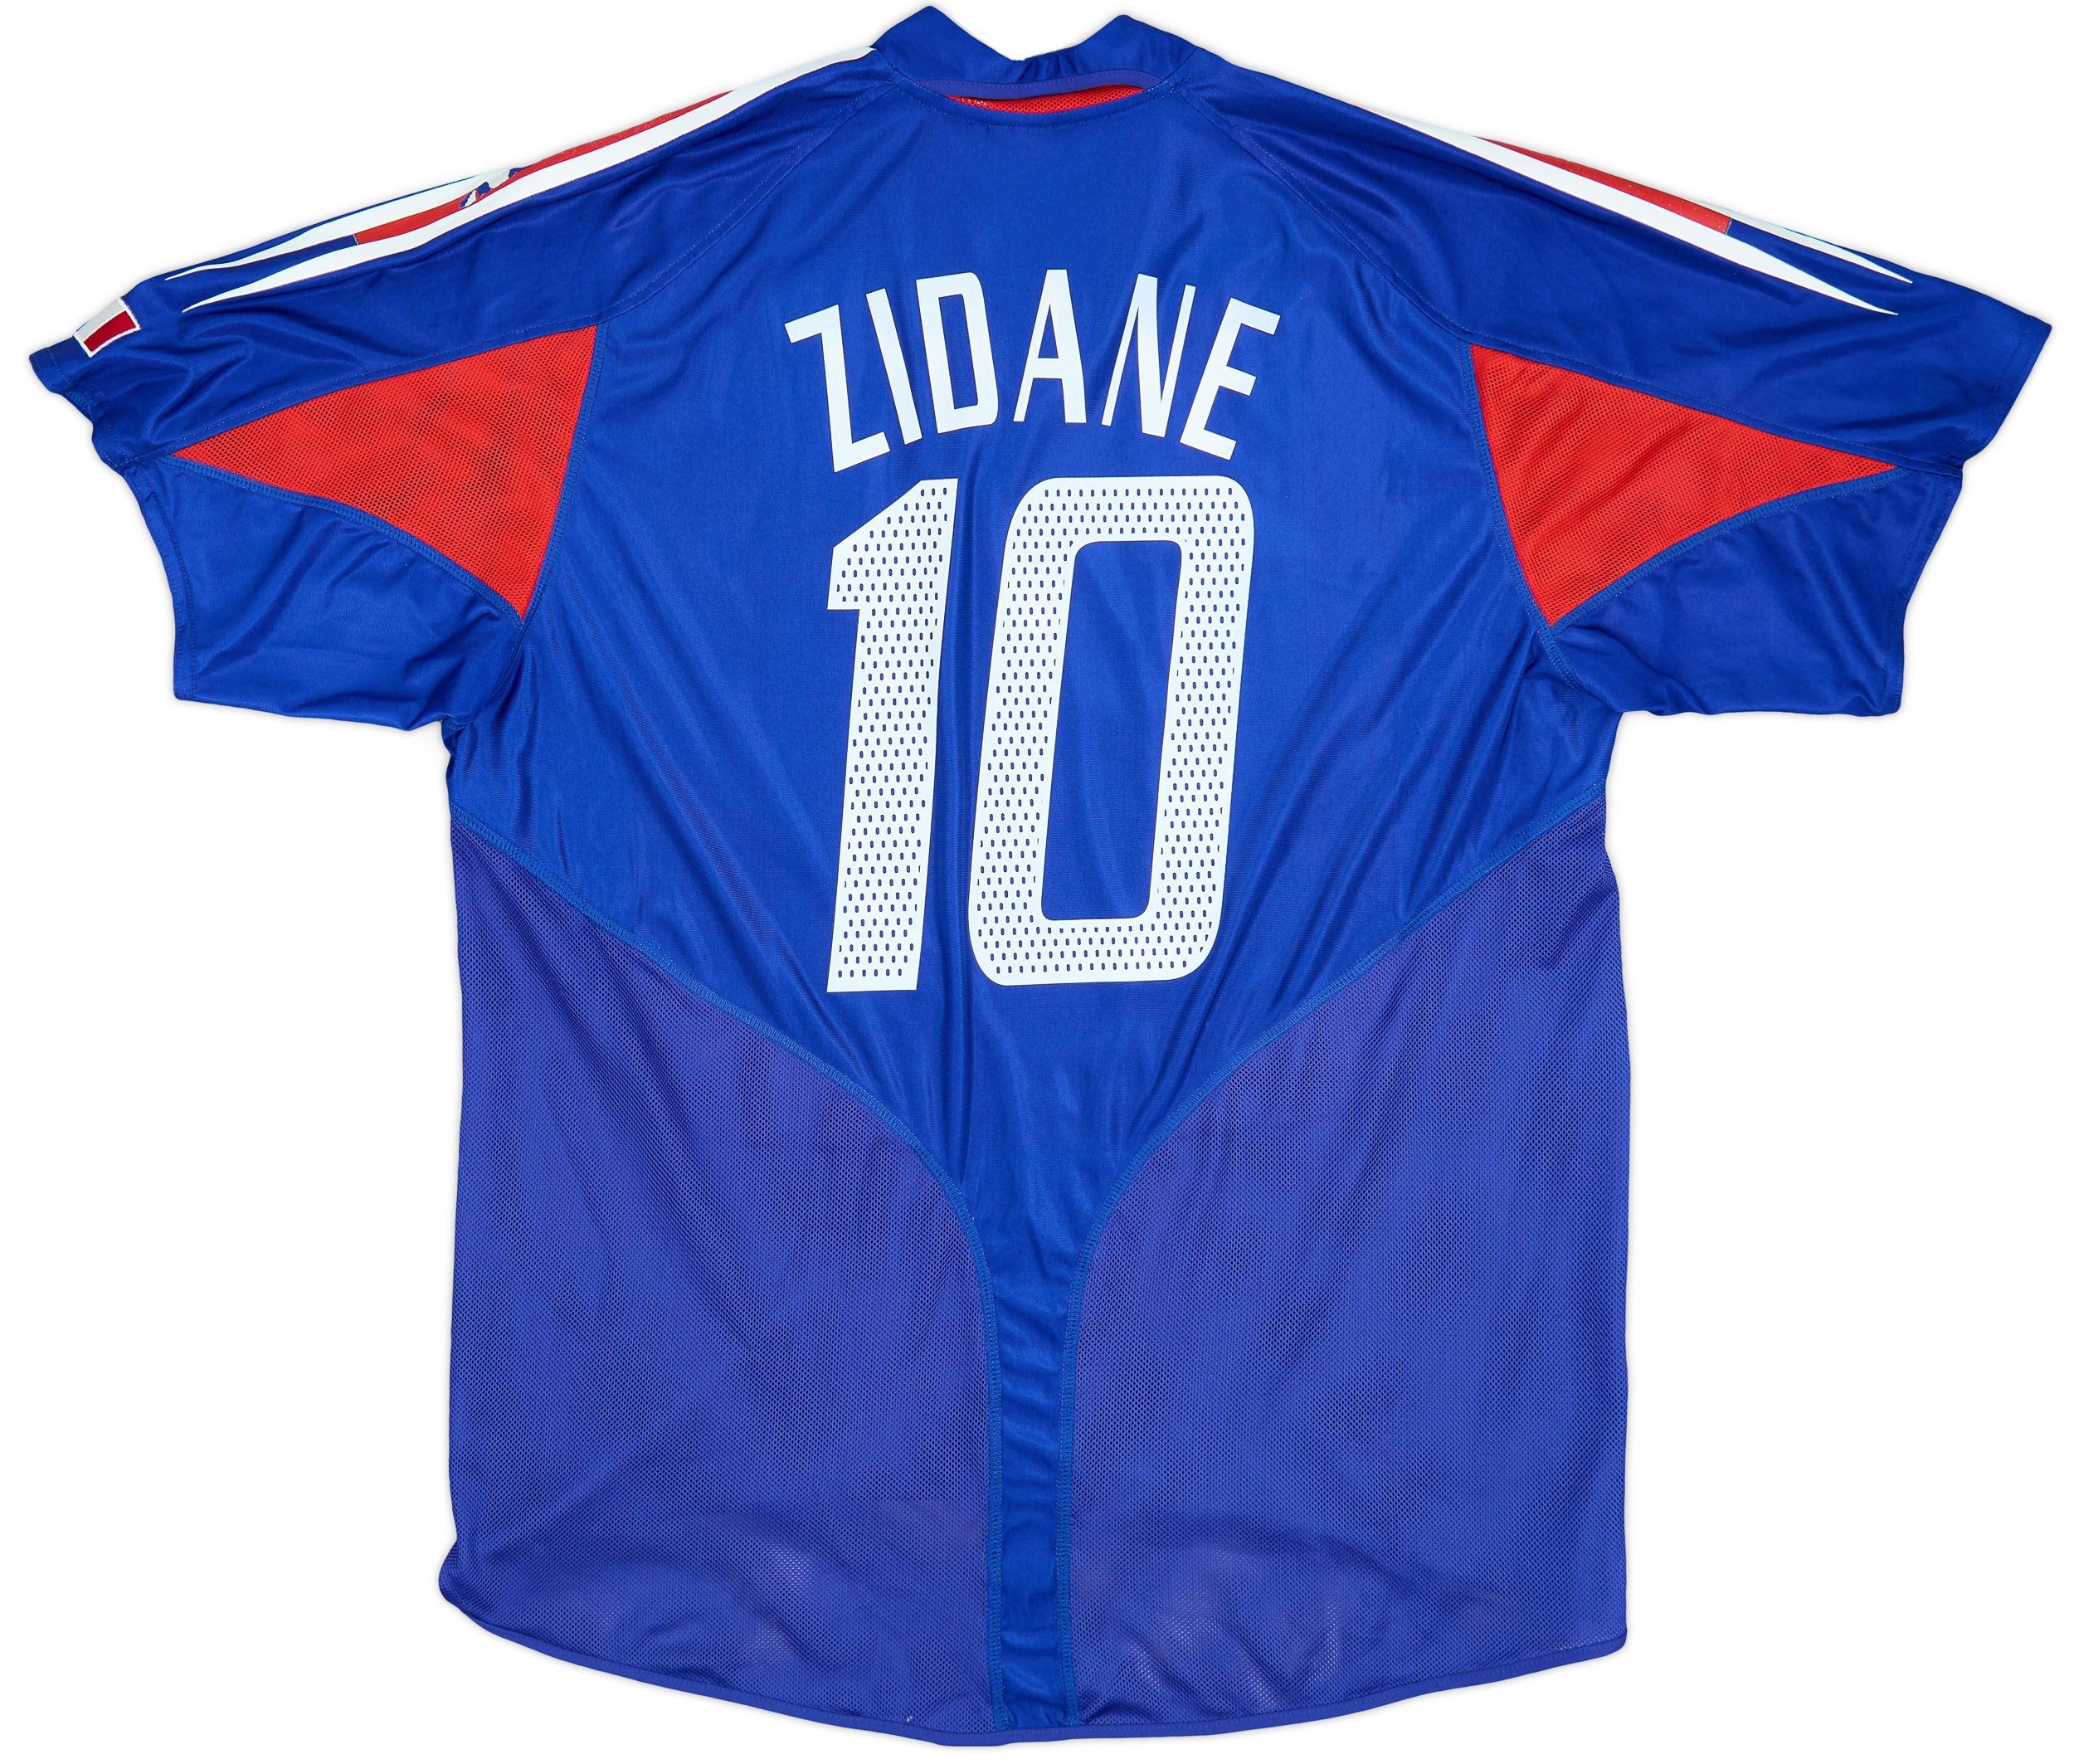 2004-06 France Home Shirt Zidane #10 - 5/10 - (L)